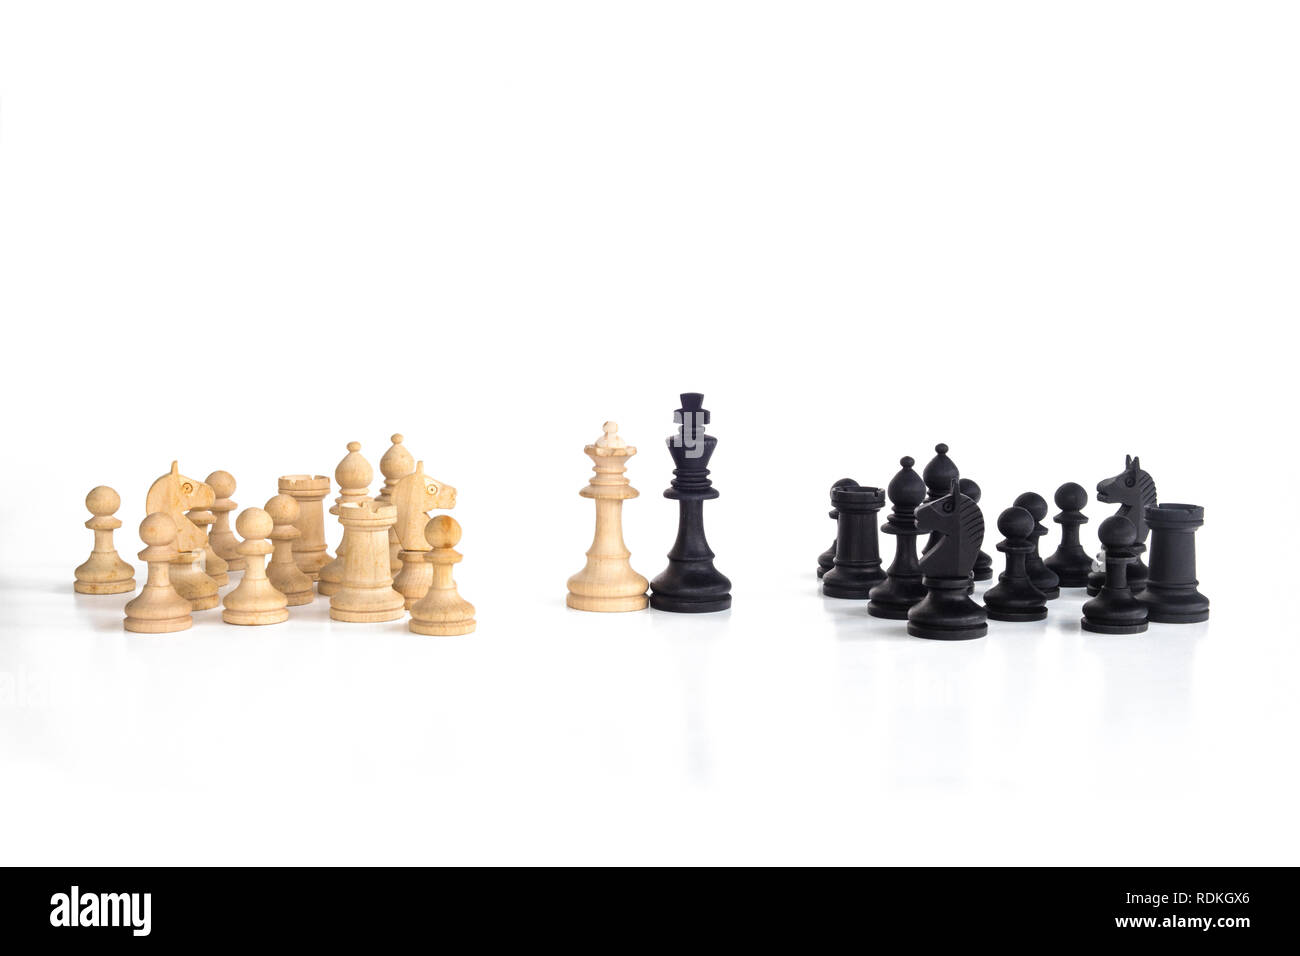 La regina Bianca e il re nero, tradizionalmente affrontato nel gioco degli scacchi, sono insieme. Immagine in isolato sullo sfondo bianco. Foto Stock